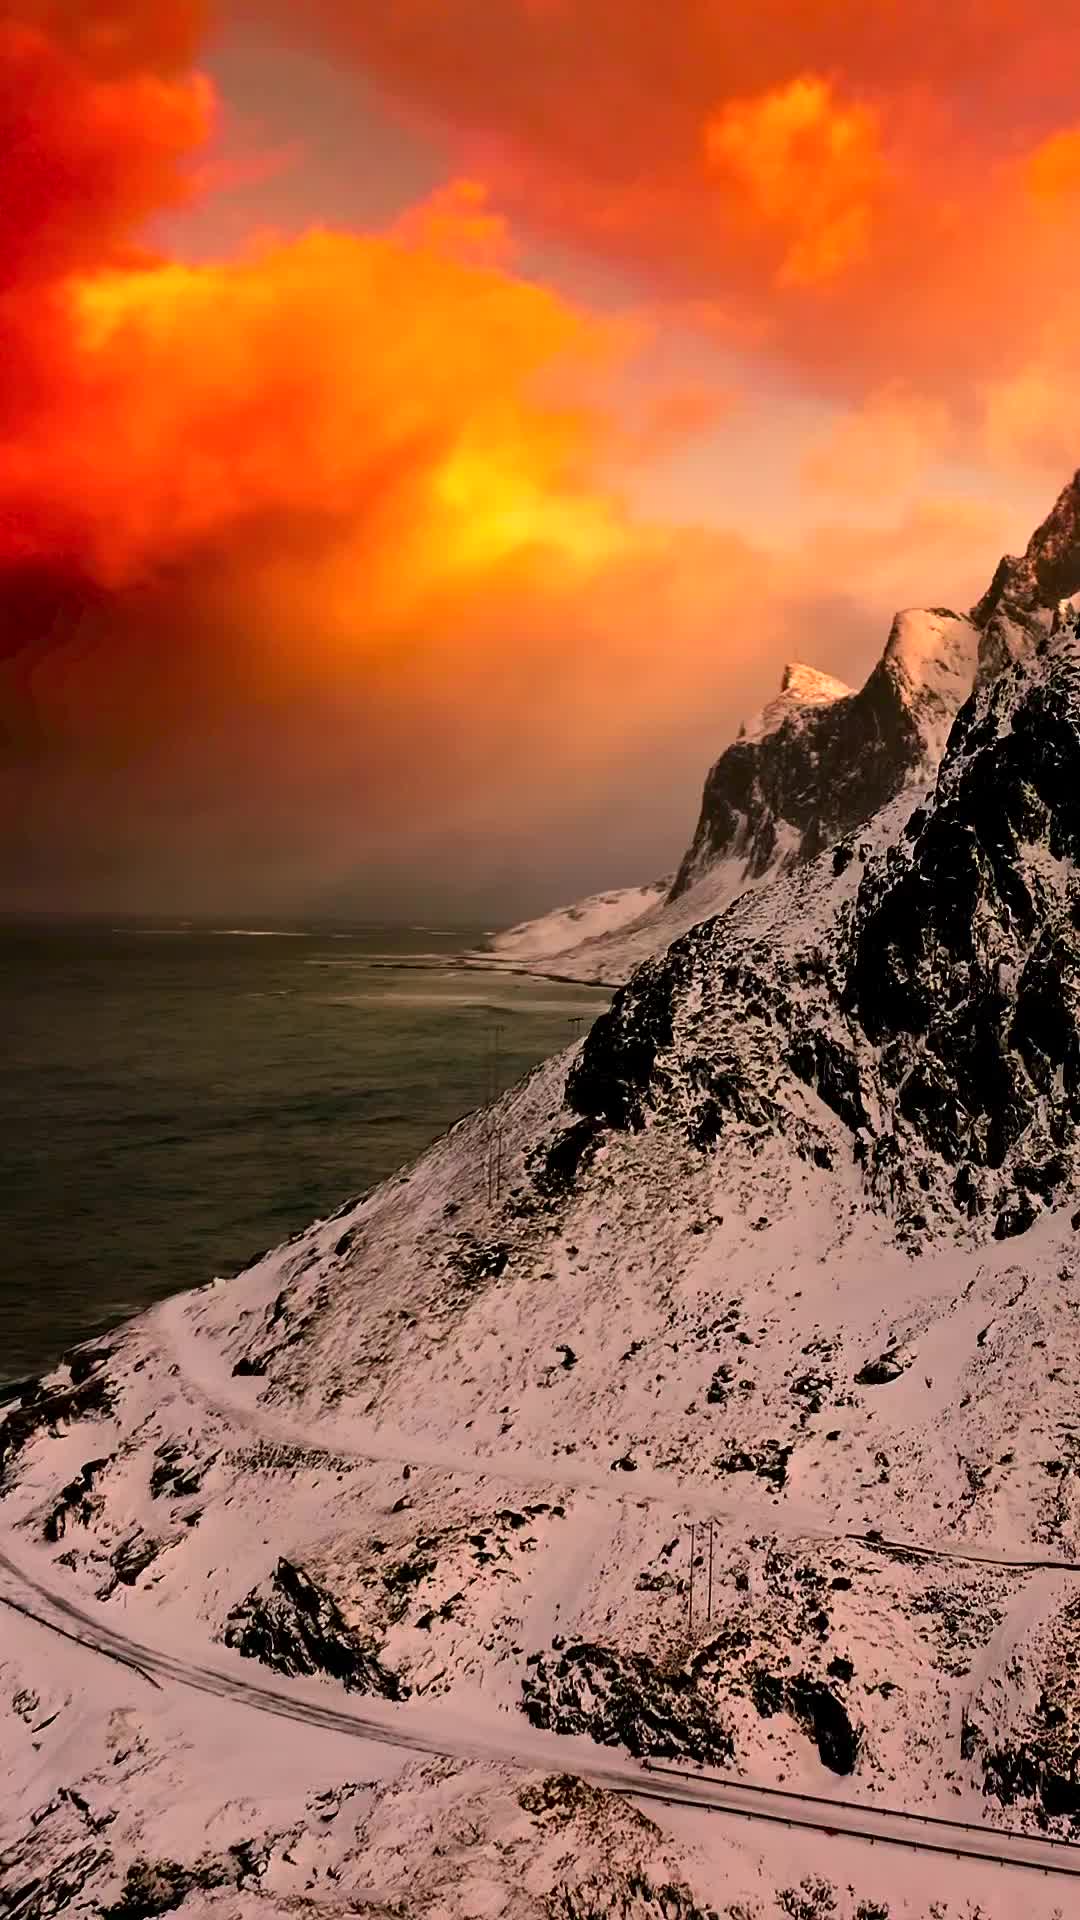 Stunning Lofoten Sunset: Nature's Dramatic Beauty